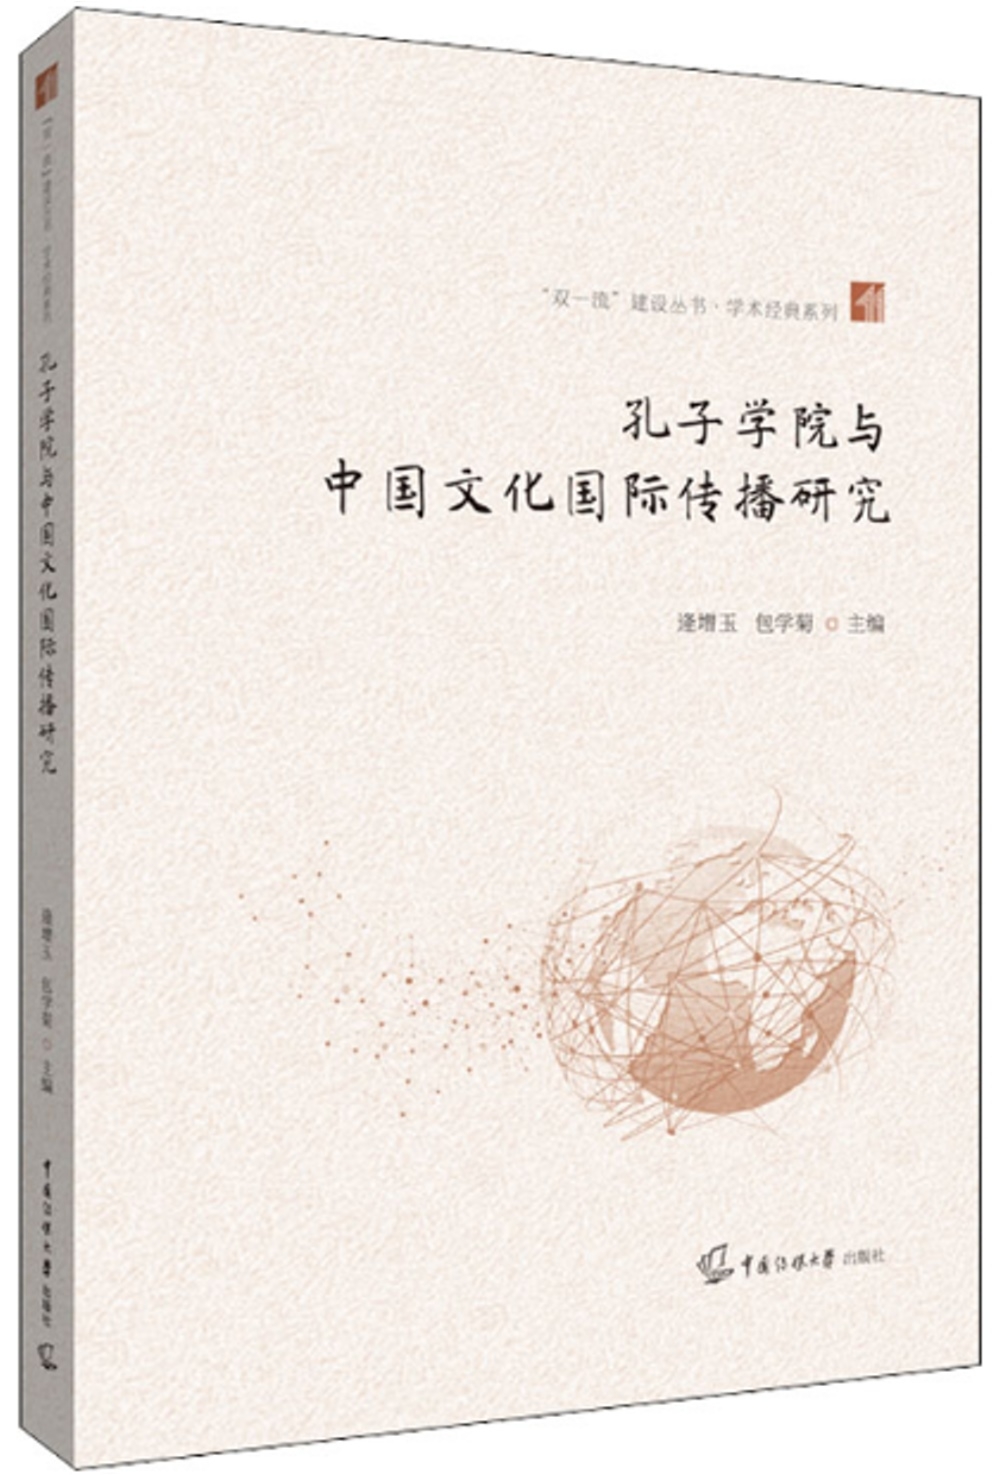 孔子學院與中國文化國際傳播研究